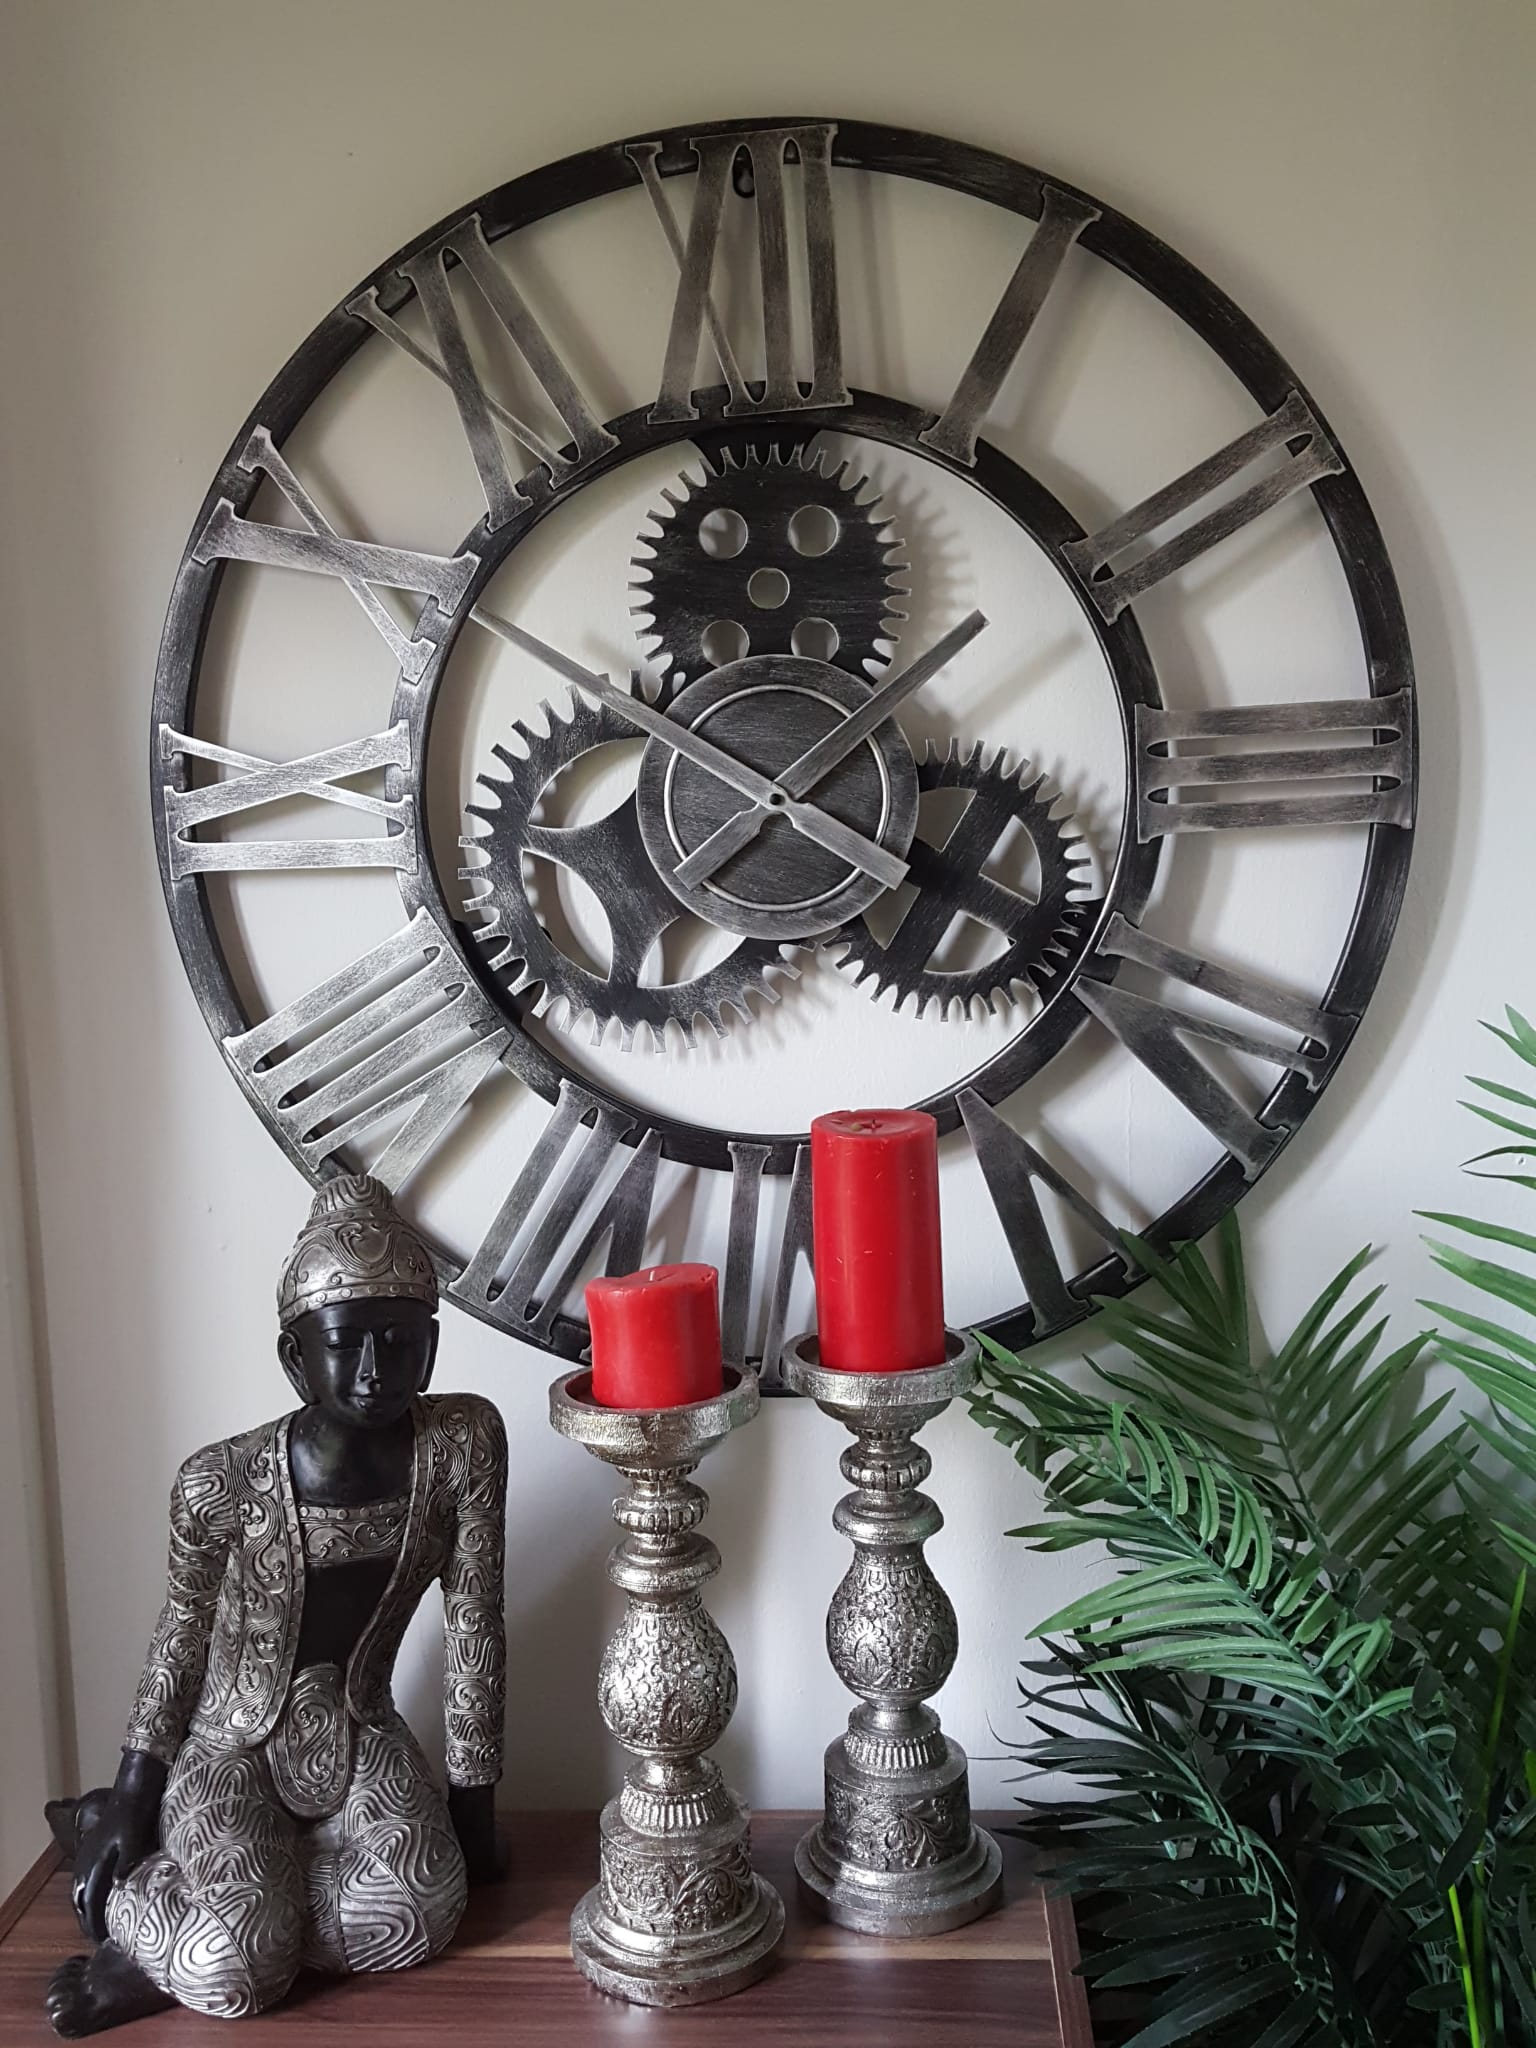 76cm - 100% Metal Large Skeleton Gear Wall Clock - Rustic Silver - Industrial Mechanical Look